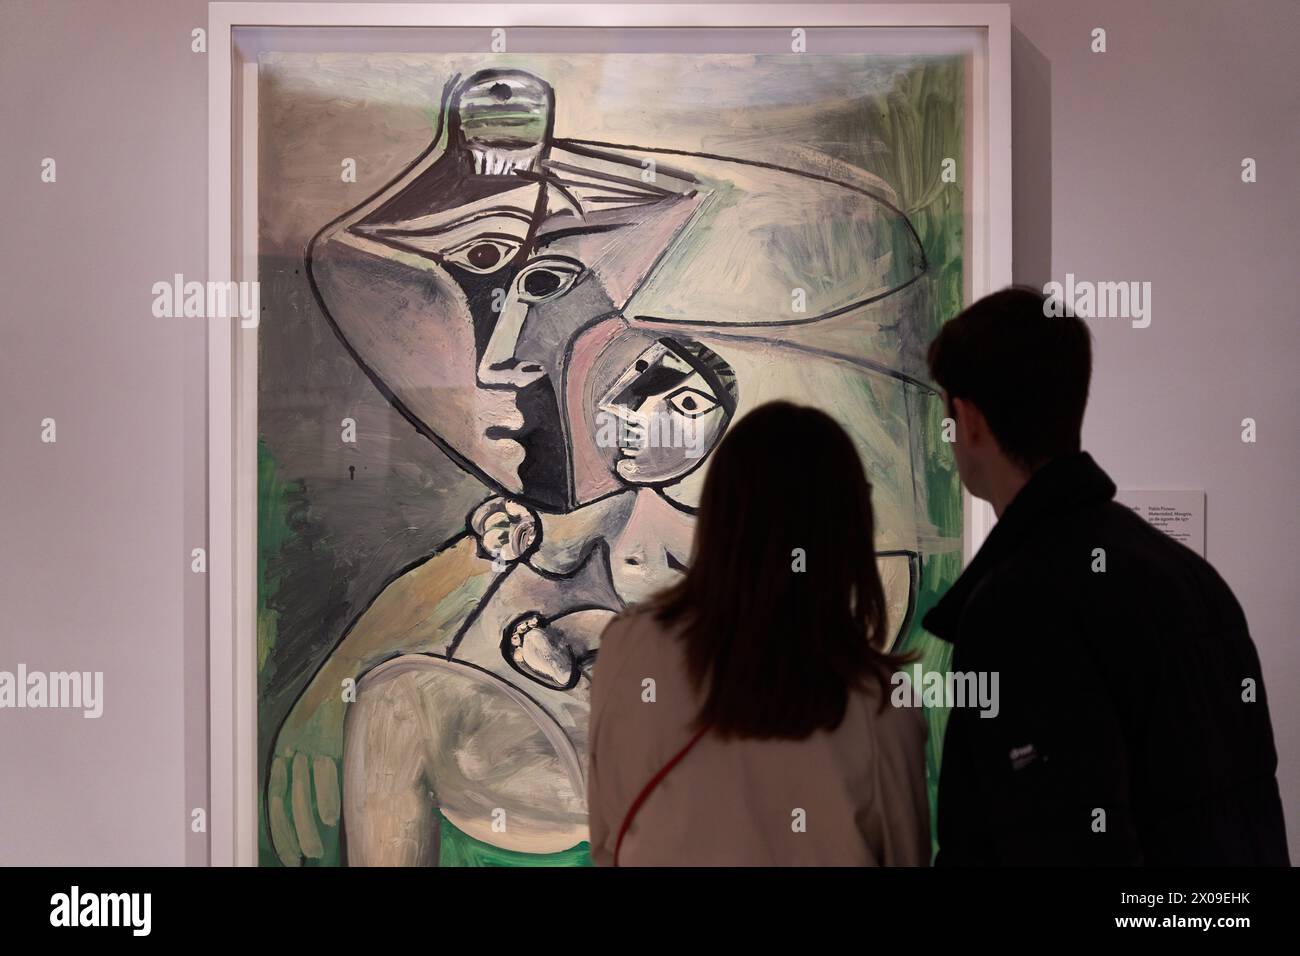 Pablo Picasso (1881-1973), maternité, Mougins, 1971, Musée Thyssen Bornemisza, Madrid, Espagne, Europe Banque D'Images